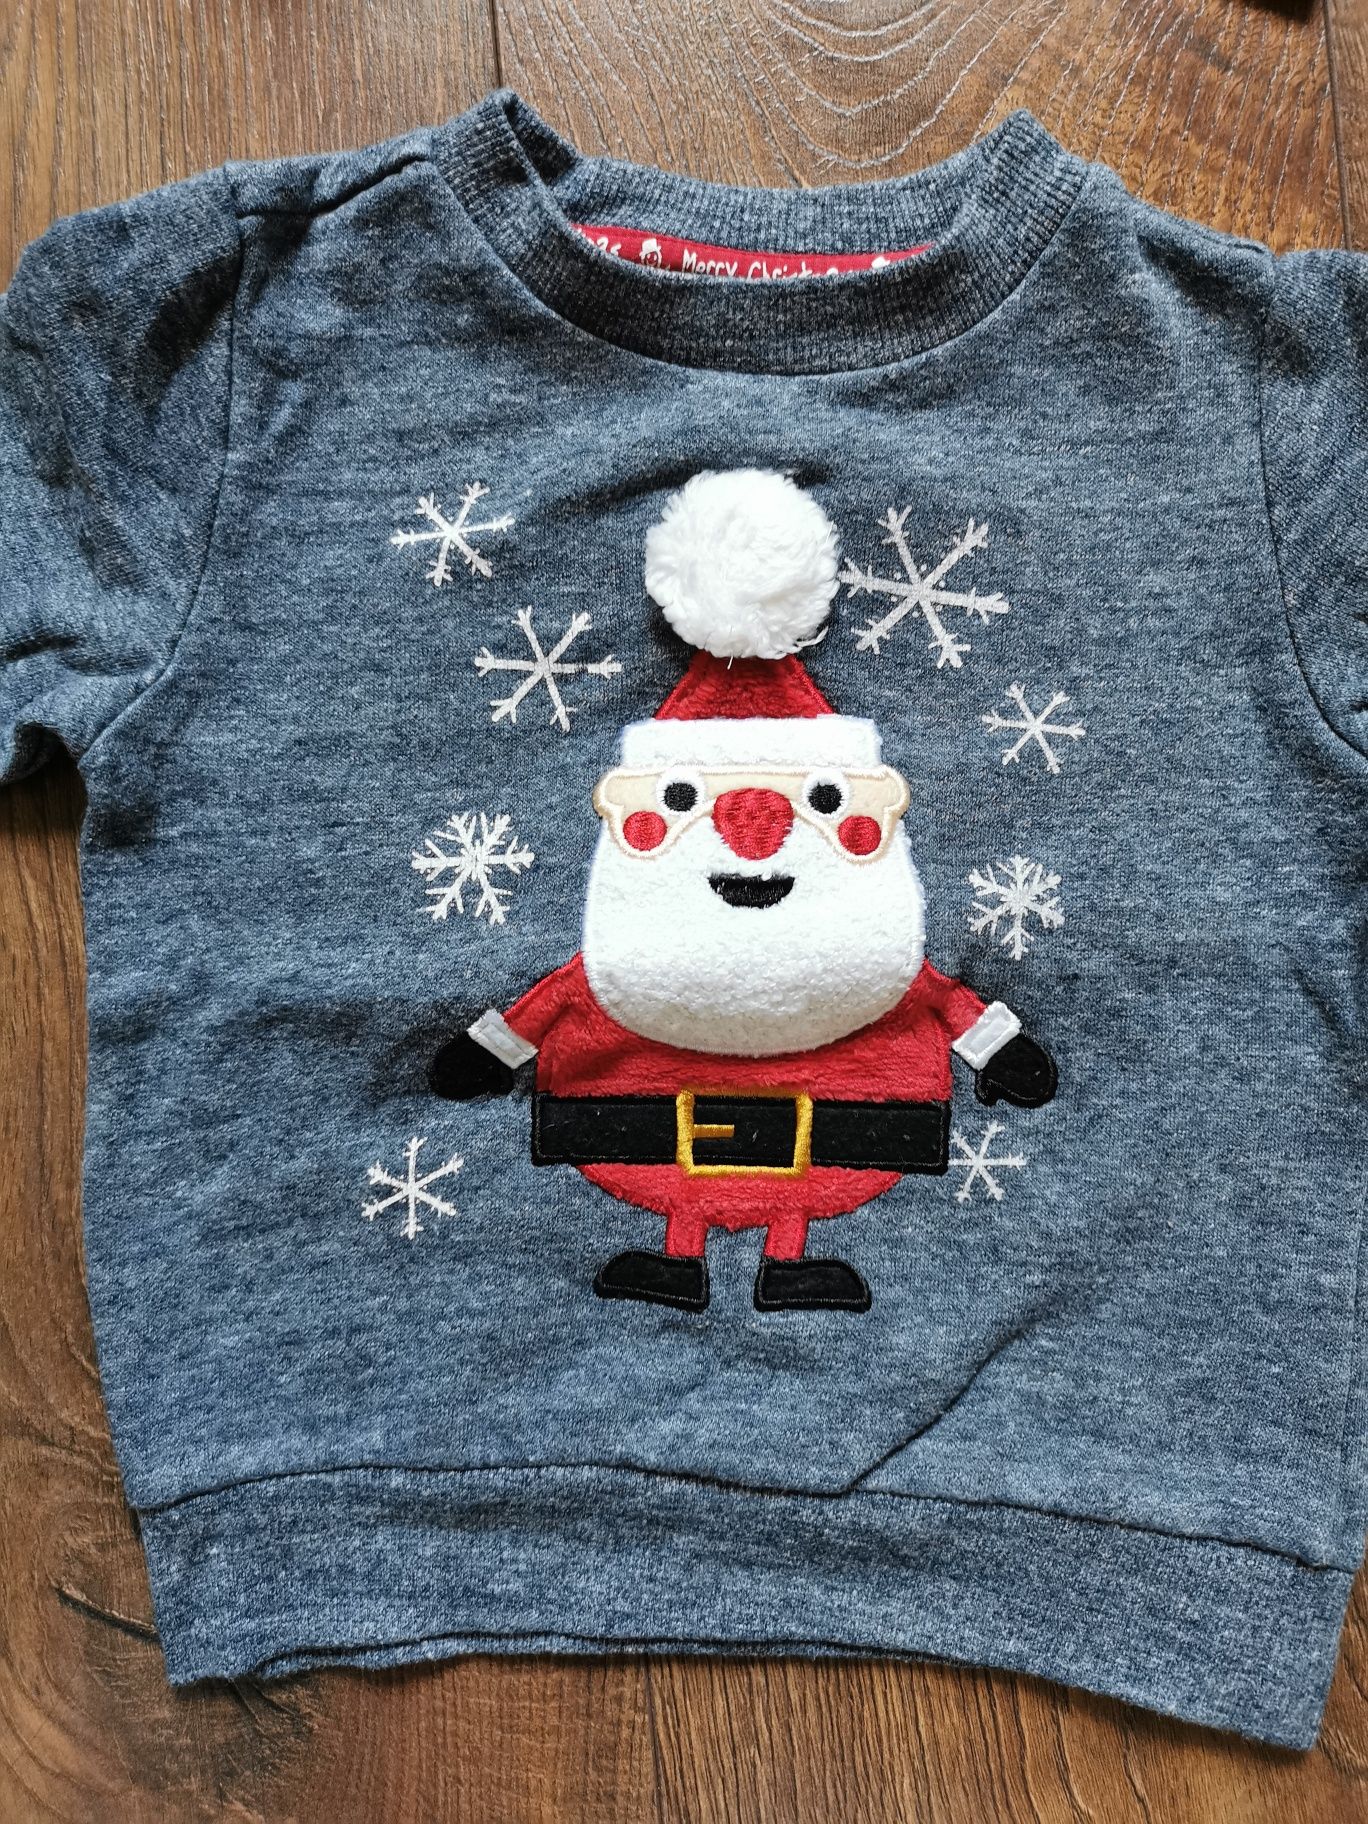 Bluzy, swetry świąteczne z Mikołajem